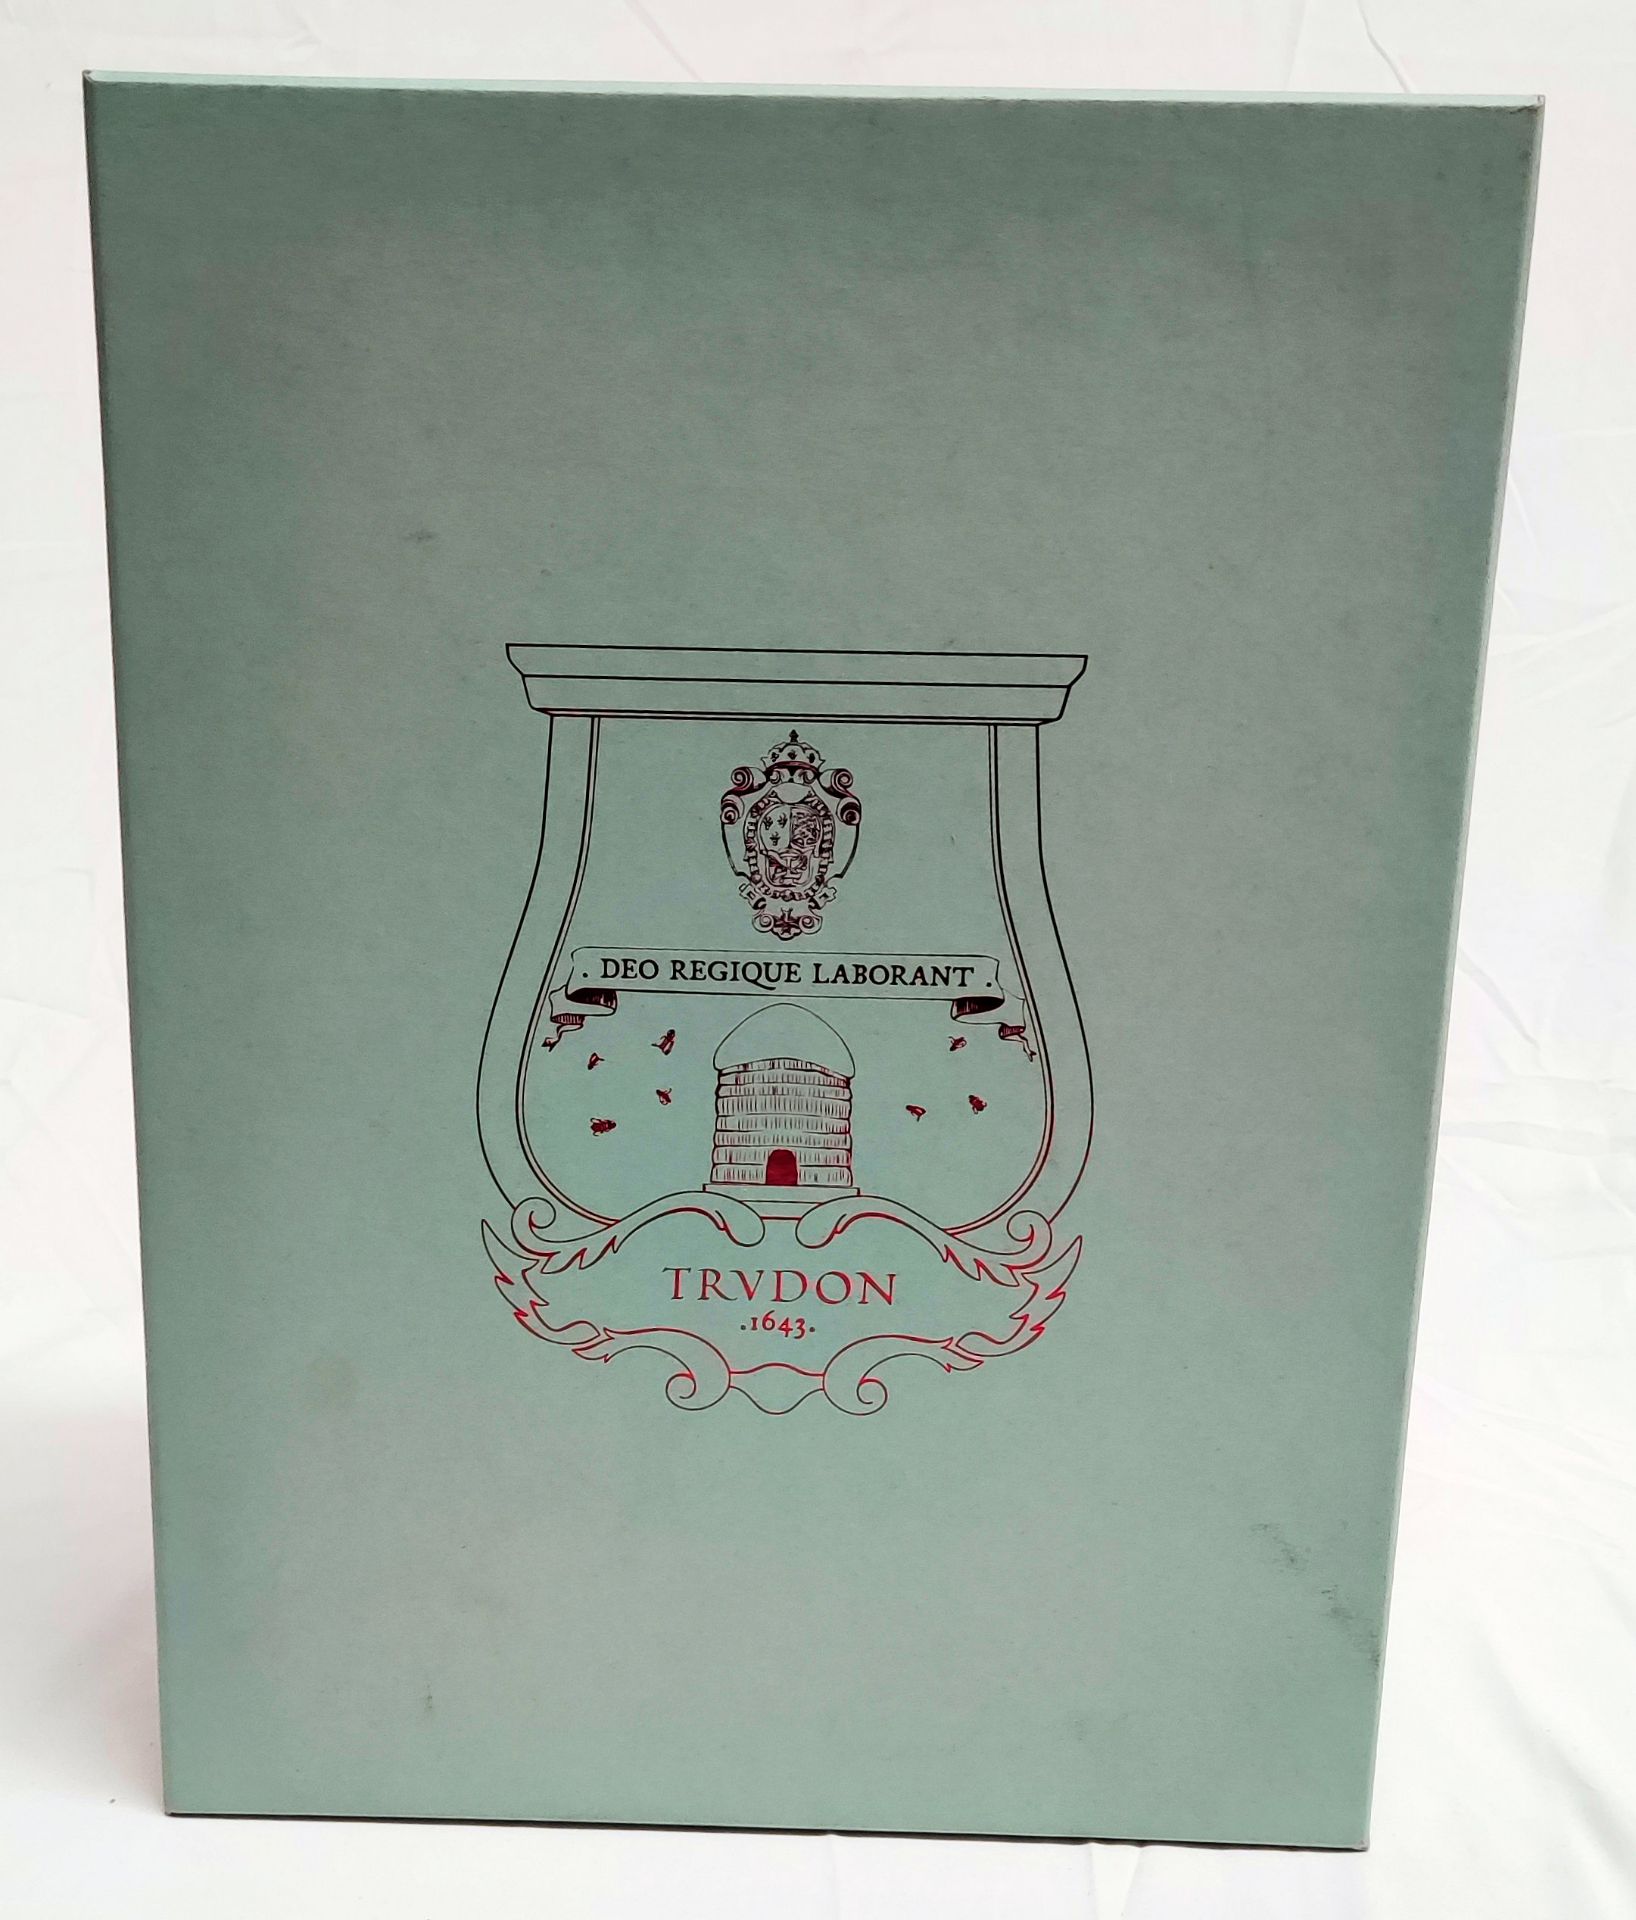 1 x TRUDON La Promeneuse Glass Diffuser - Boxed - Original RRP £320 - Ref: 5211353/HJL358/C19/07- - Image 5 of 16